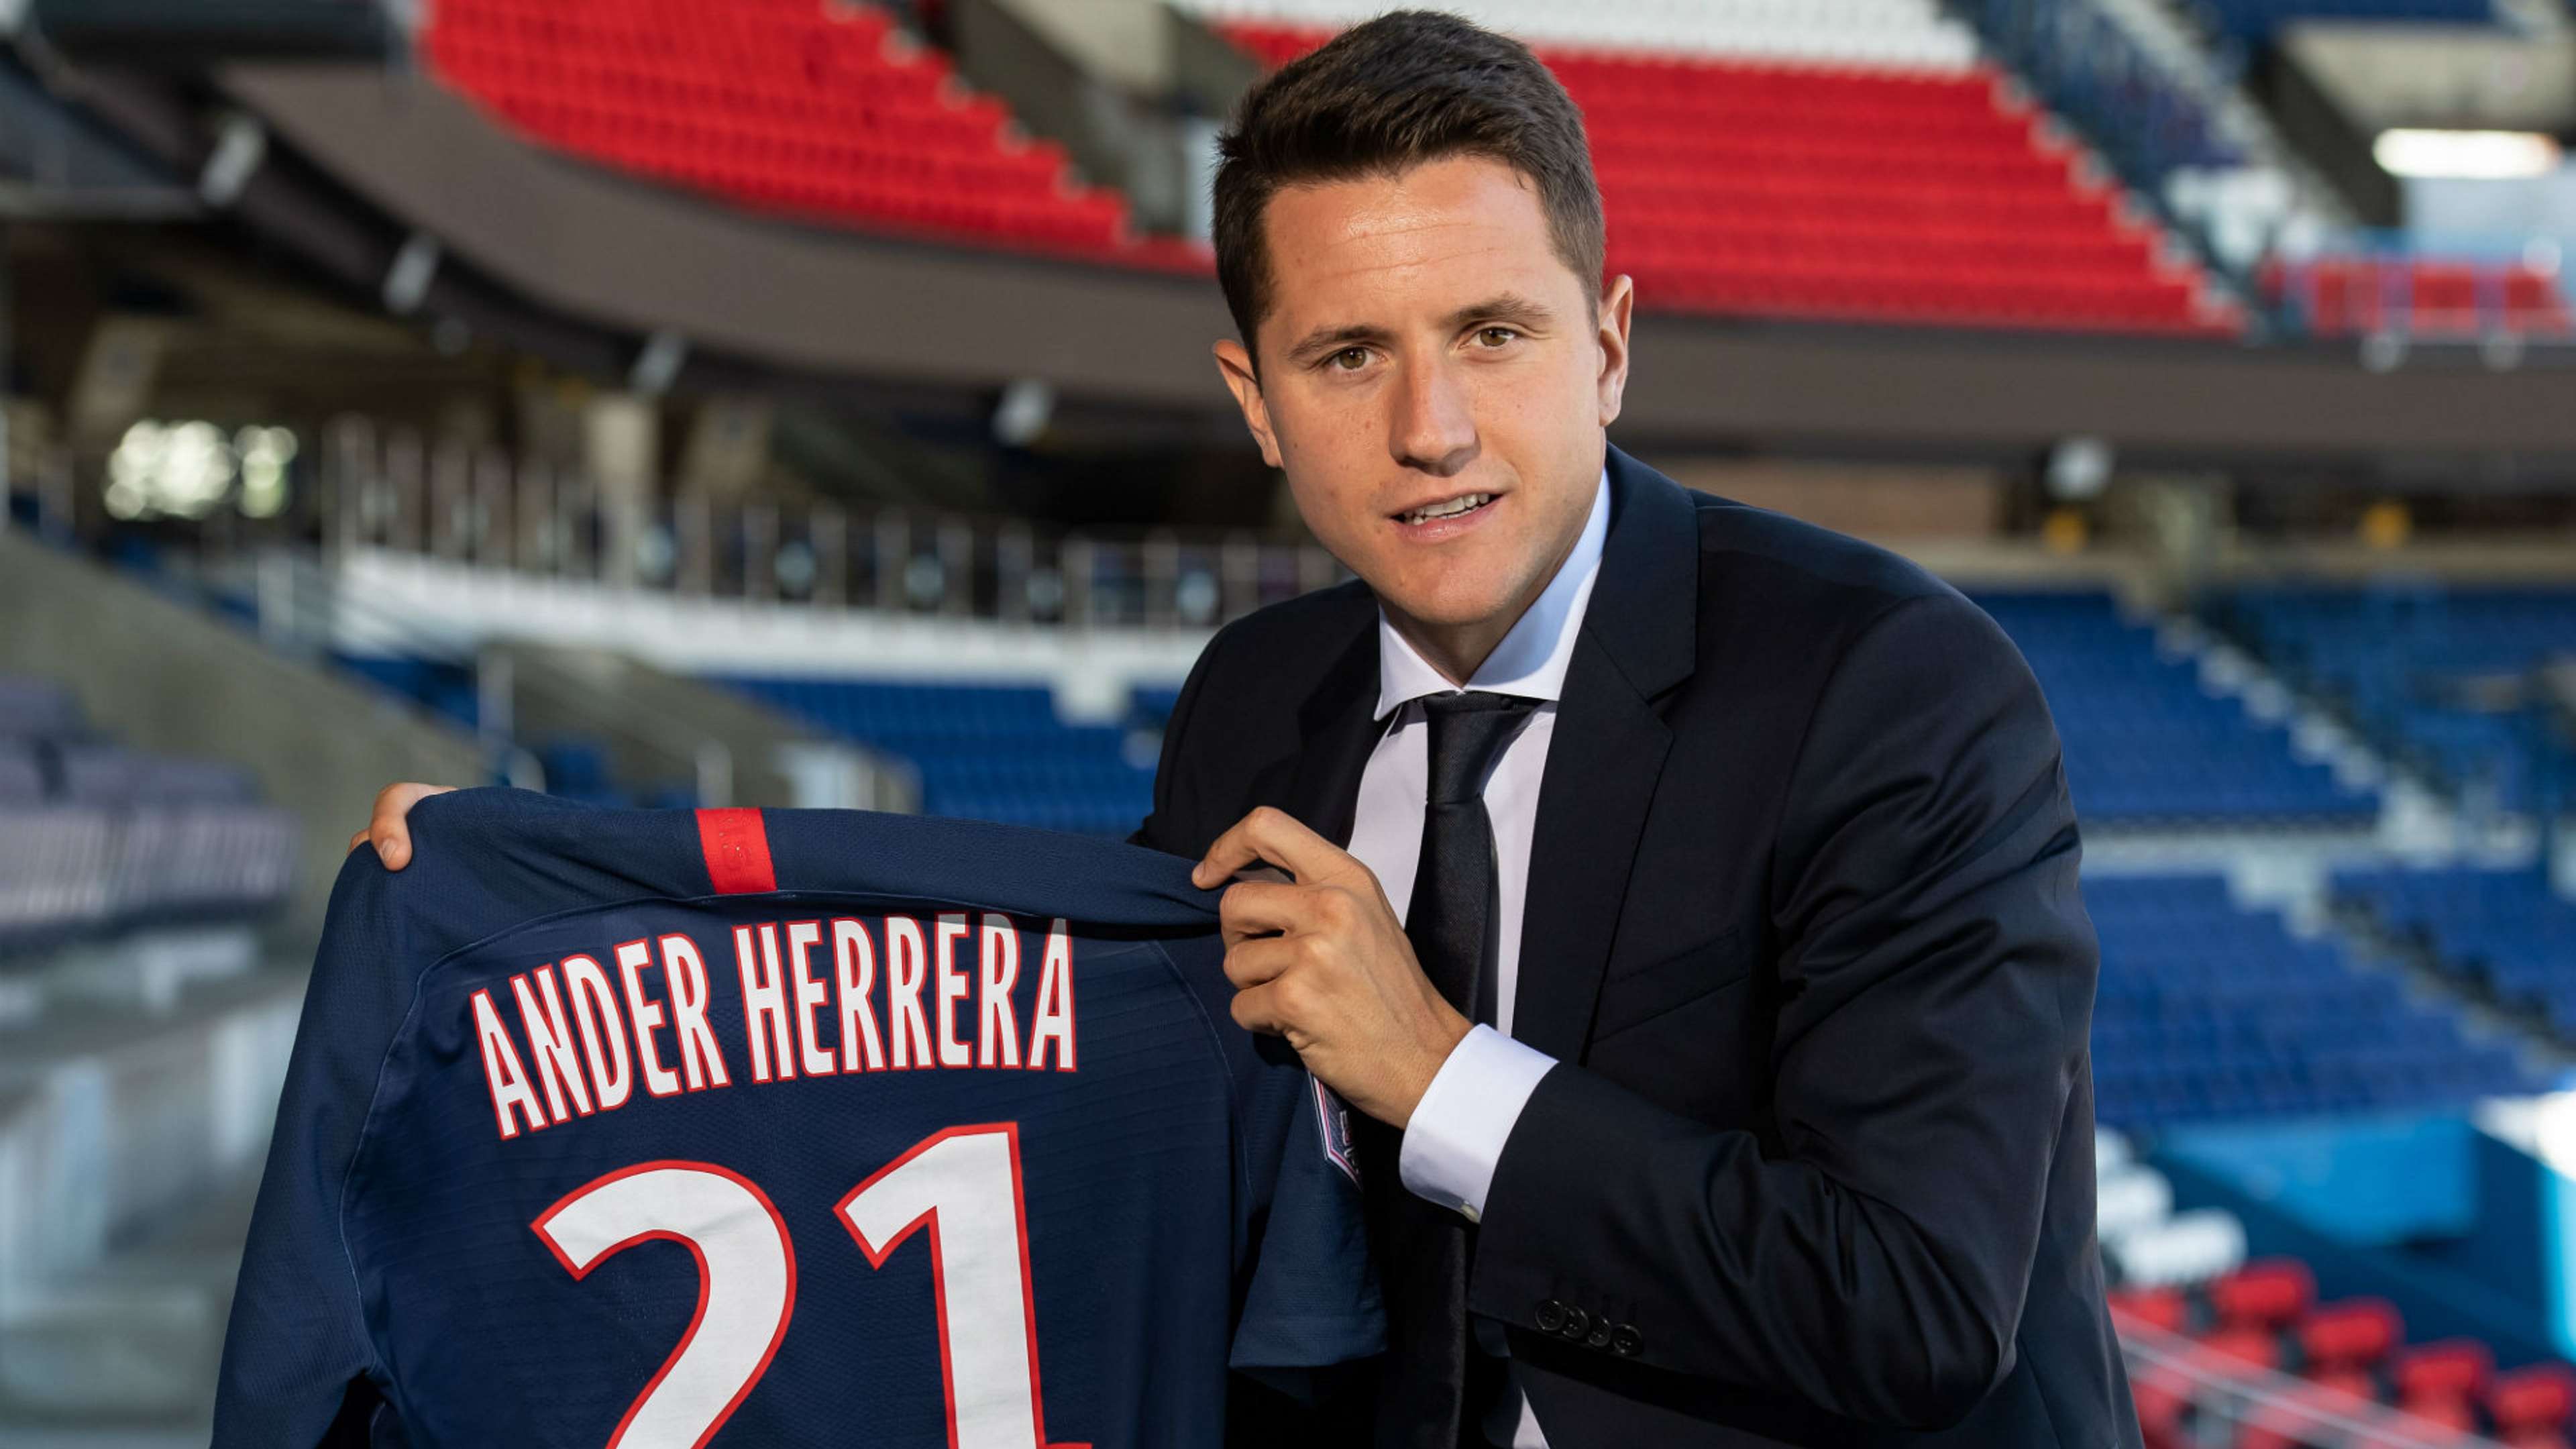 Ander Herrera Paris Saint-Germain transfer announcement 2019